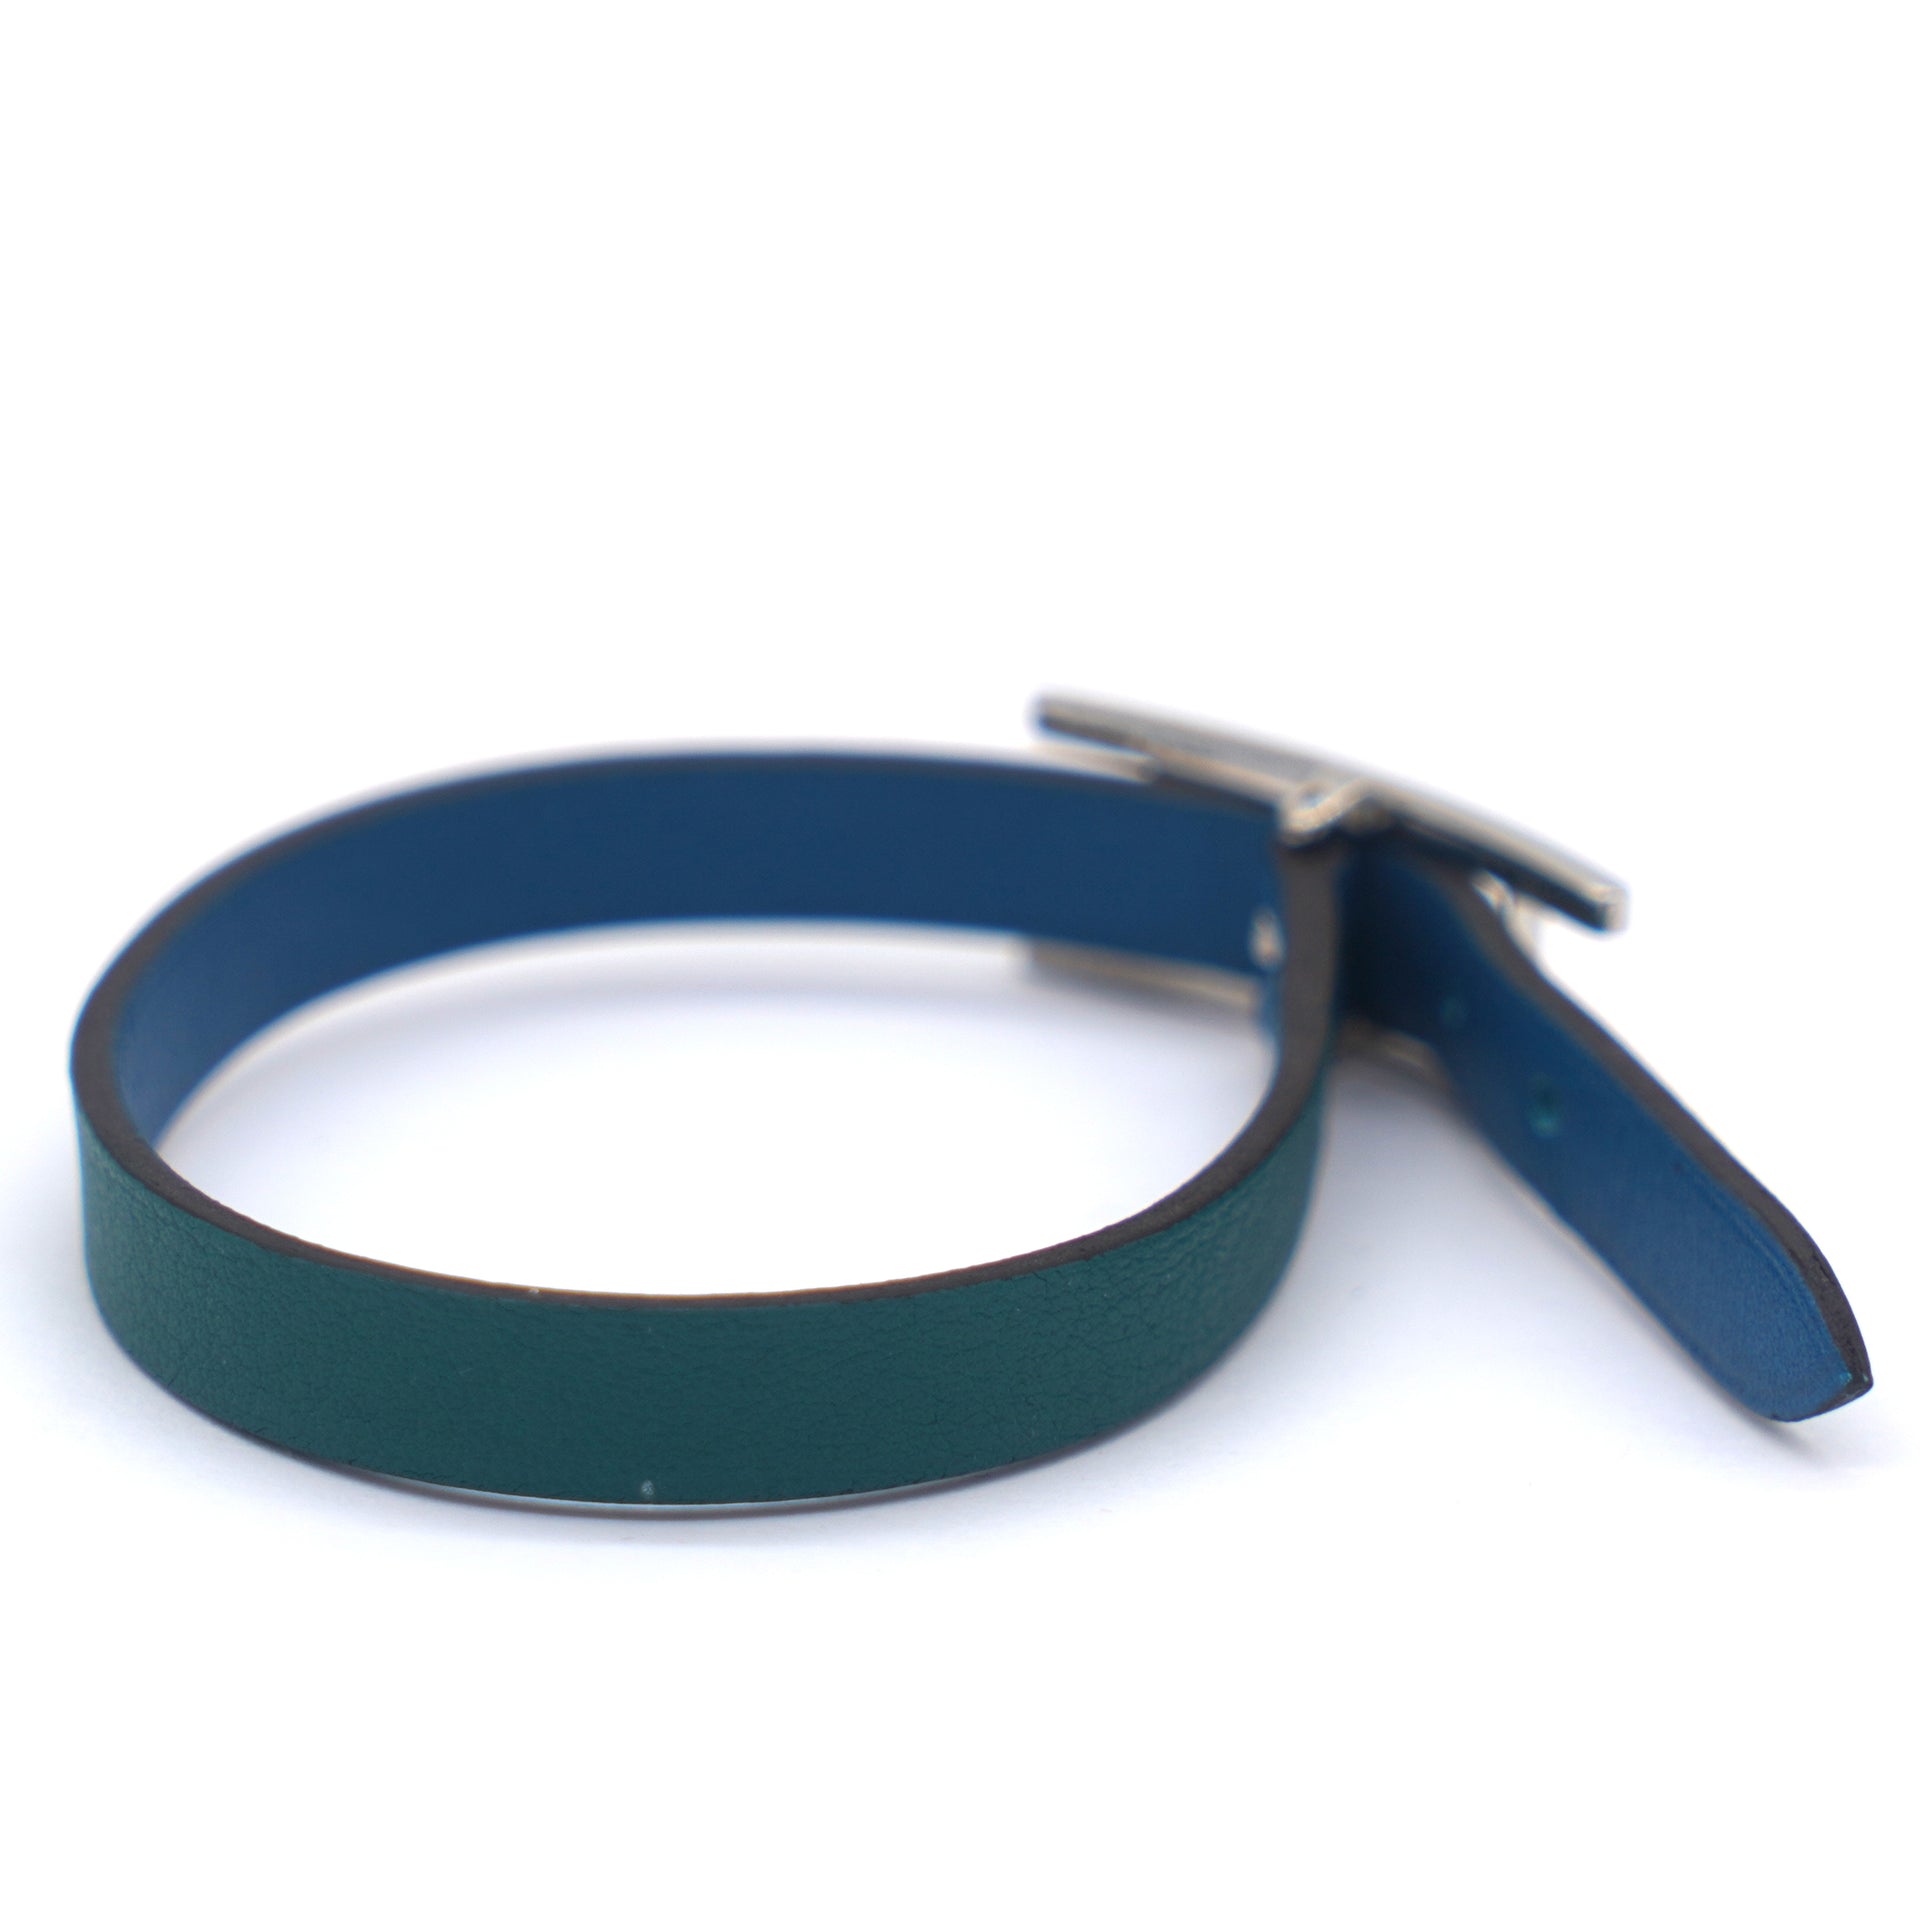 Behapi bracelet blue